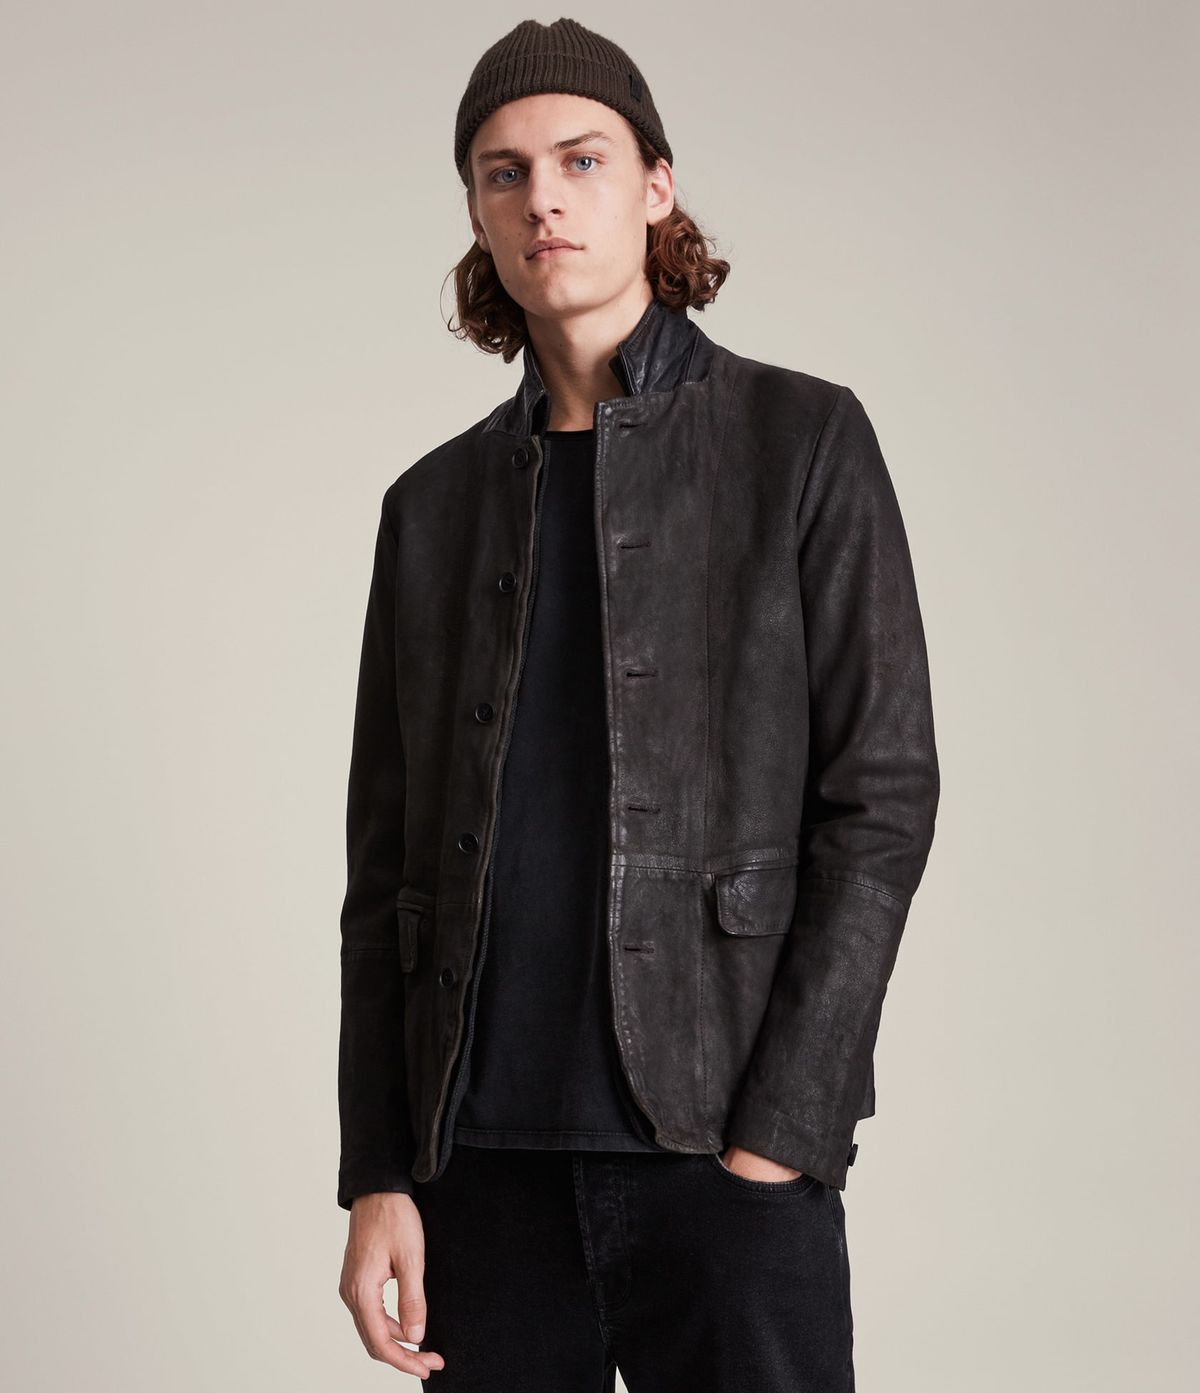 Men's Survey Leather Jacket - Front View